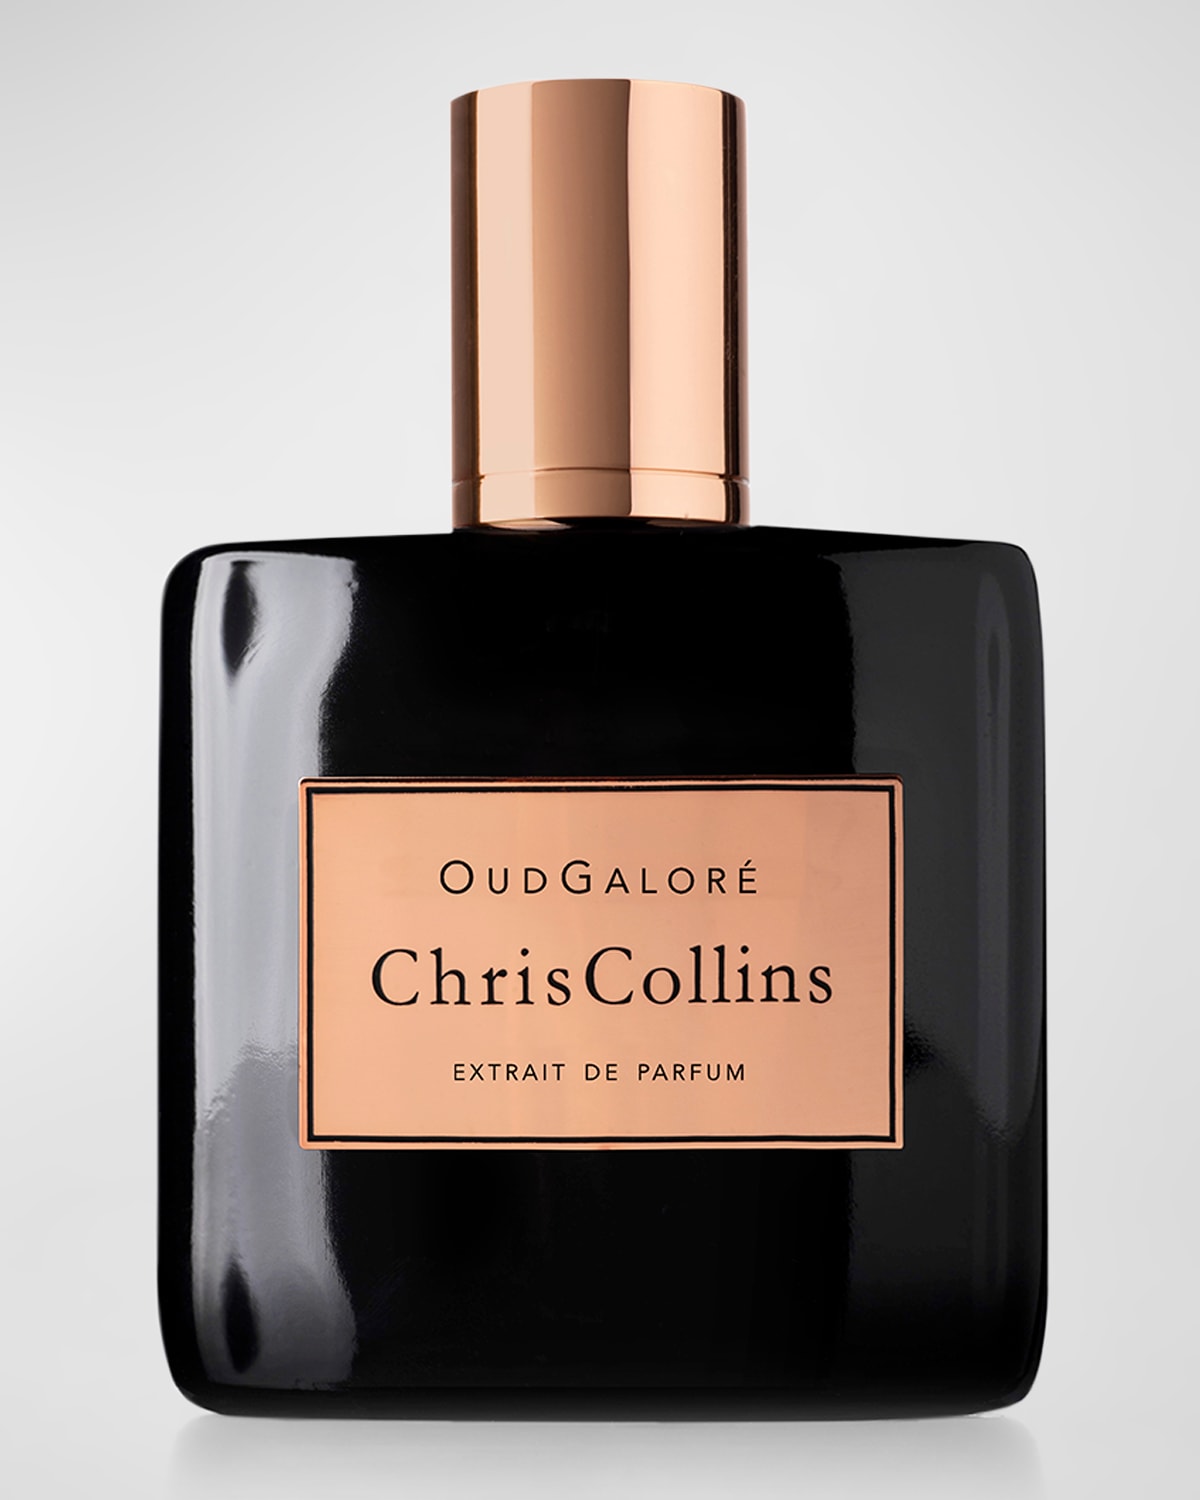 Oud Galore Extrait de Parfum, 1.7 oz./50mL